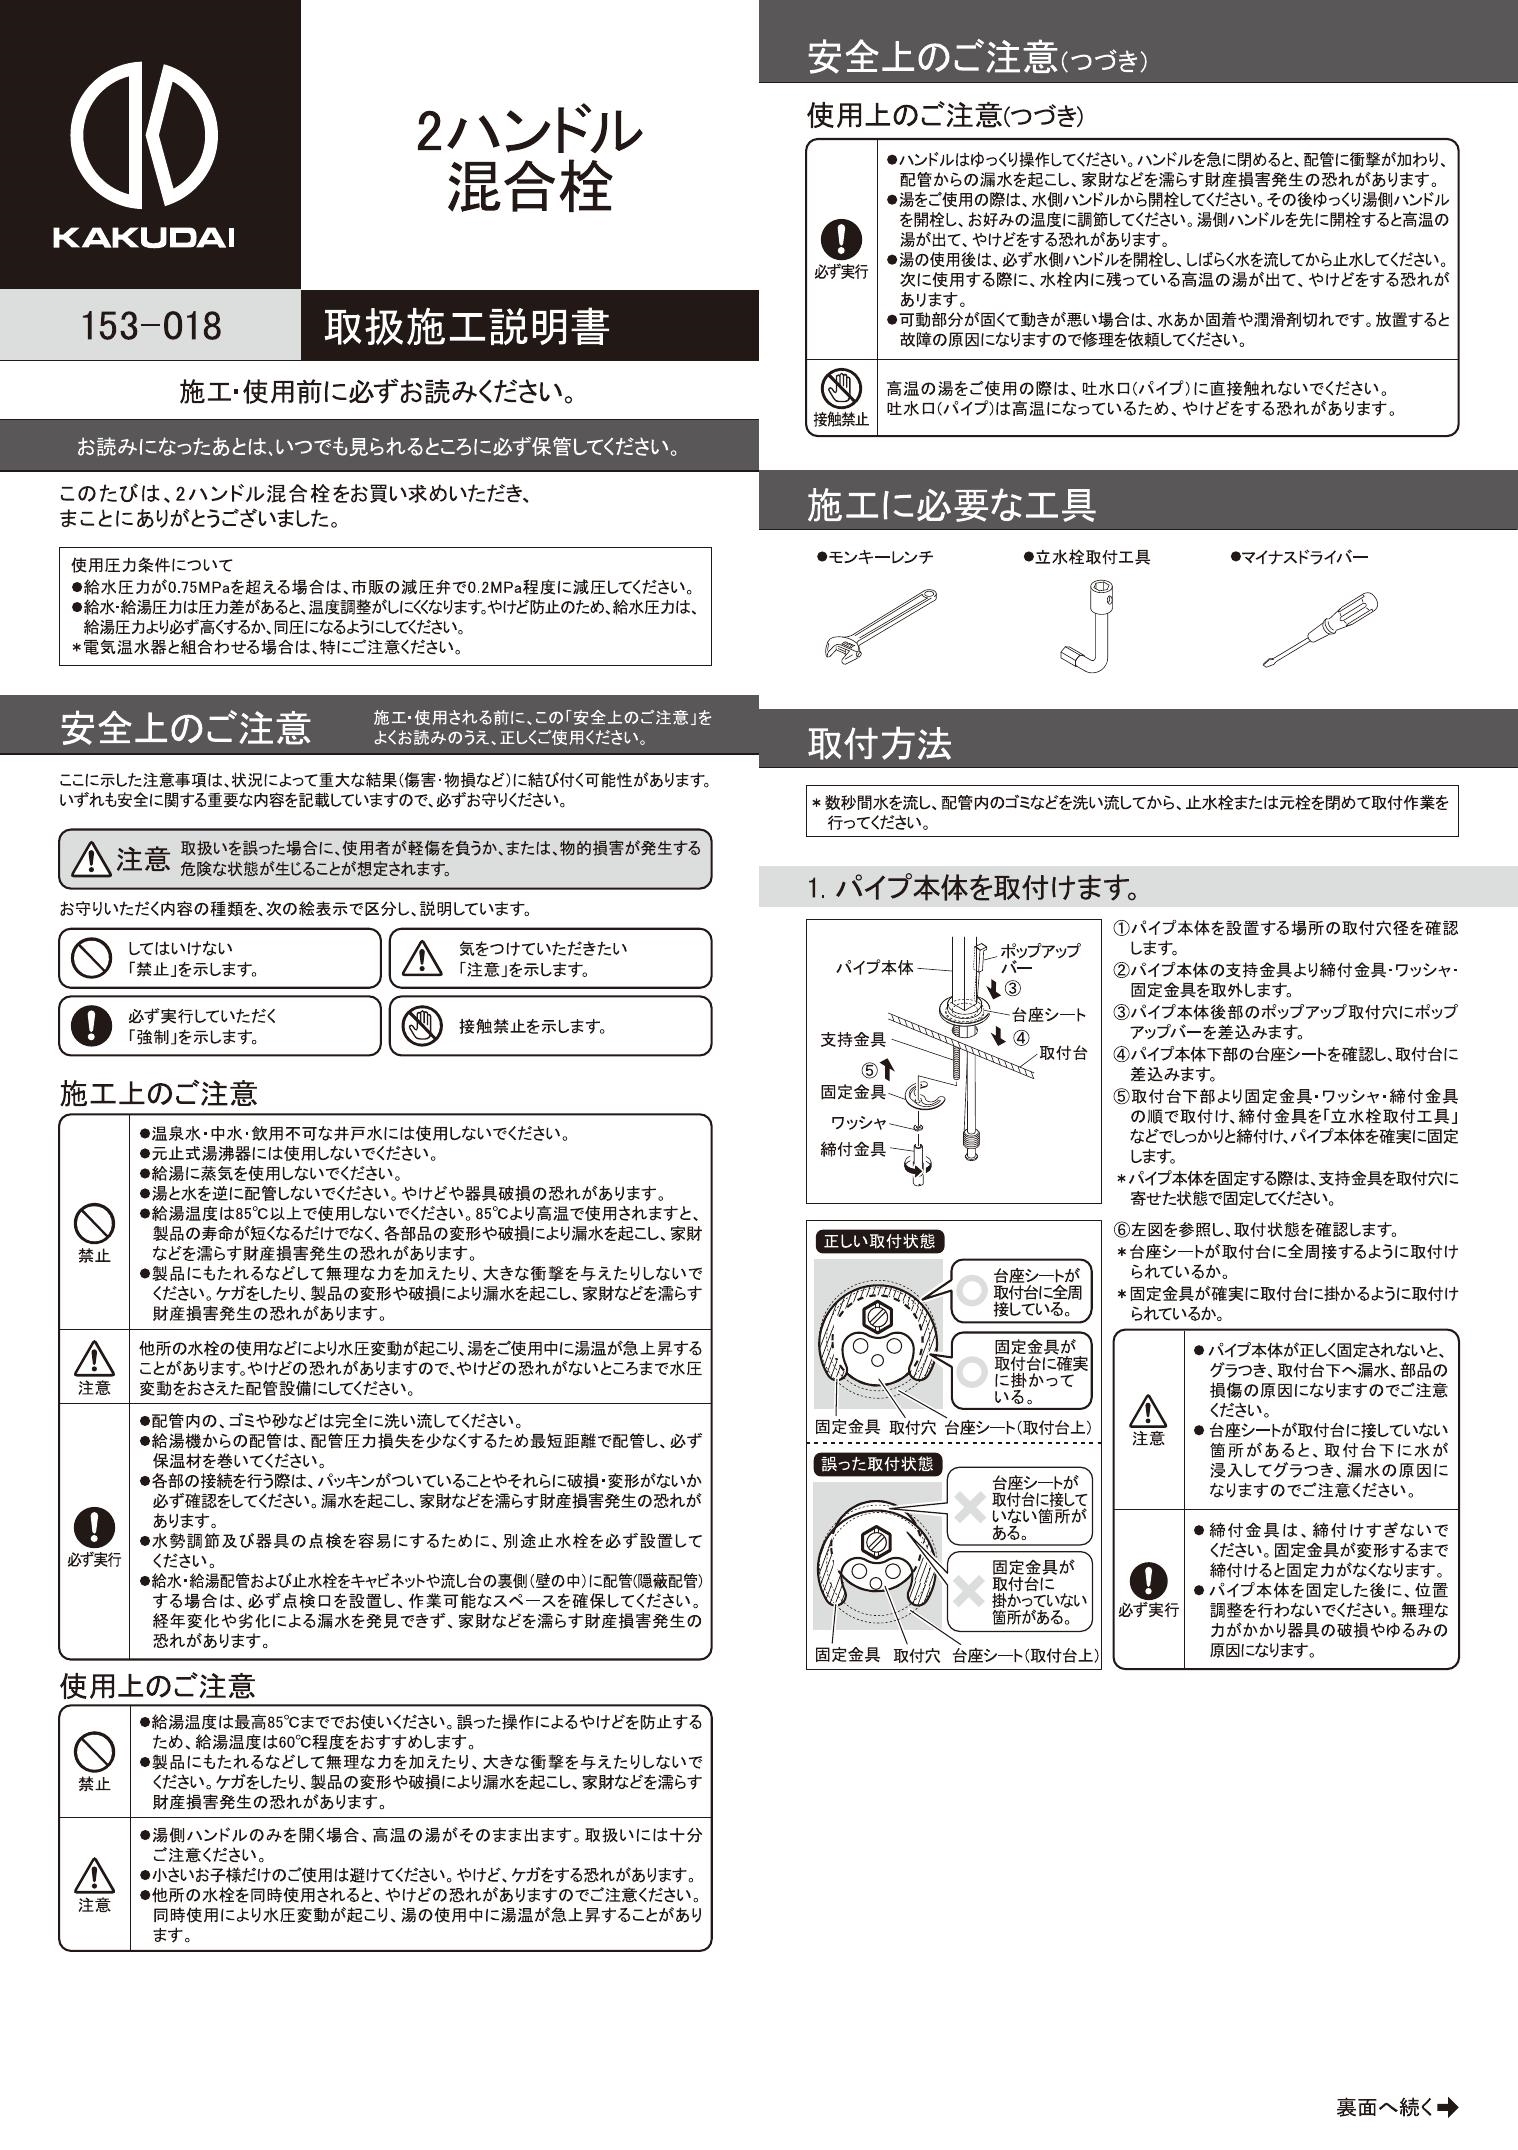 キッチン用蛇口 カクダイ コルディア 2ハンドル混合栓 153-006 - 1